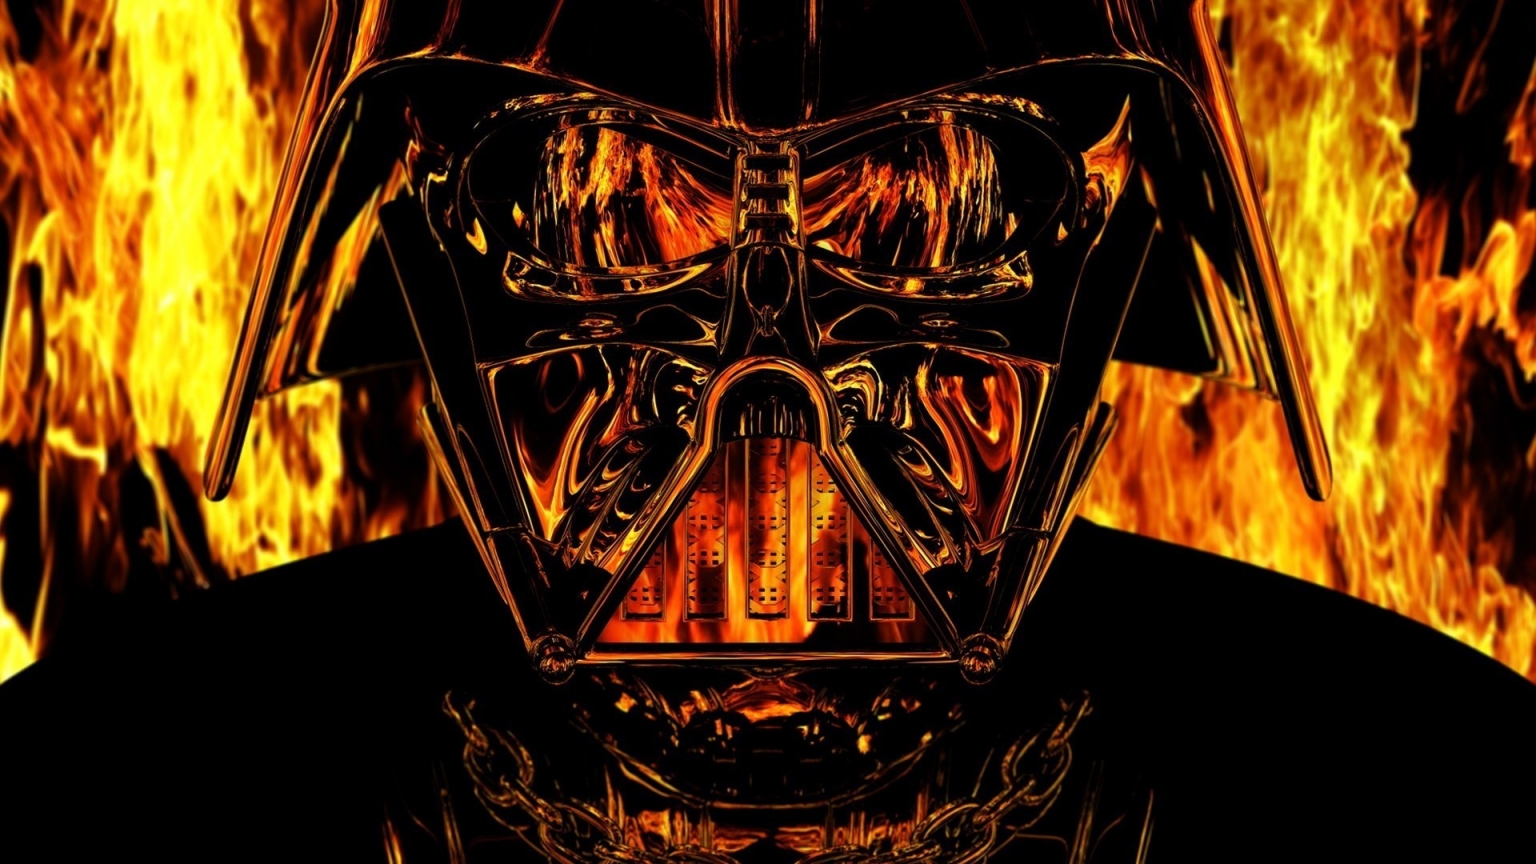 Darth Vader Star Wars for 1536 x 864 HDTV resolution